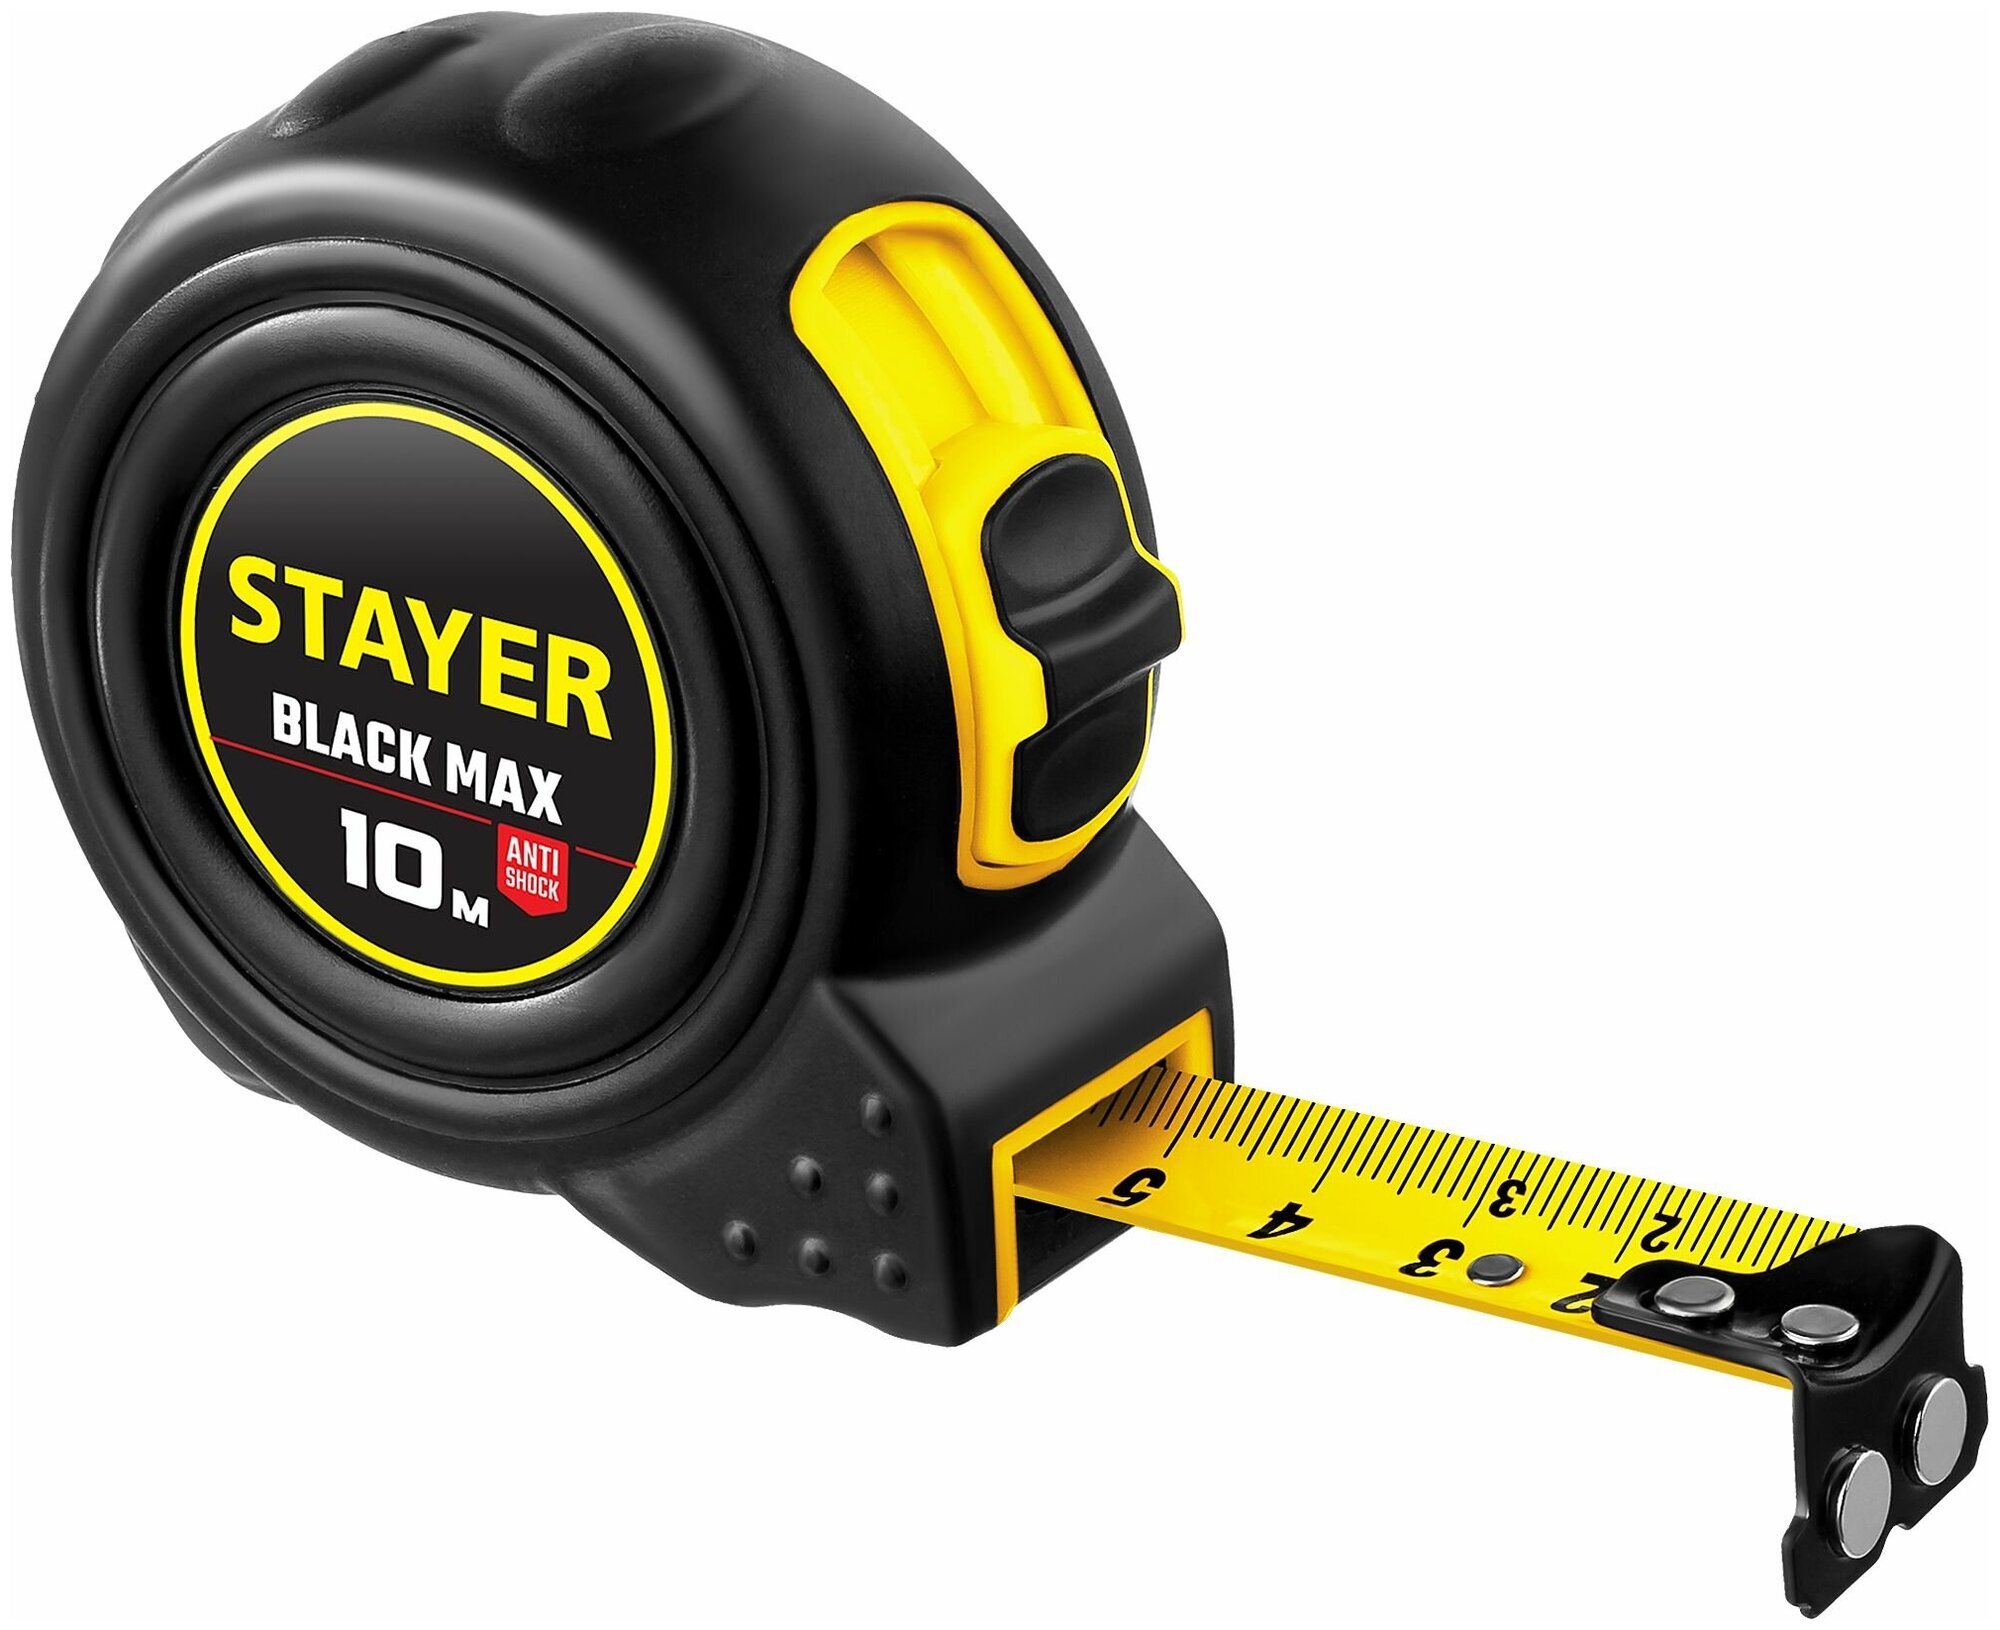 STAYER BlackMax 10м / 25мм рулетка в ударостойком полностью обрезиненном корпусе и двумя фиксаторами